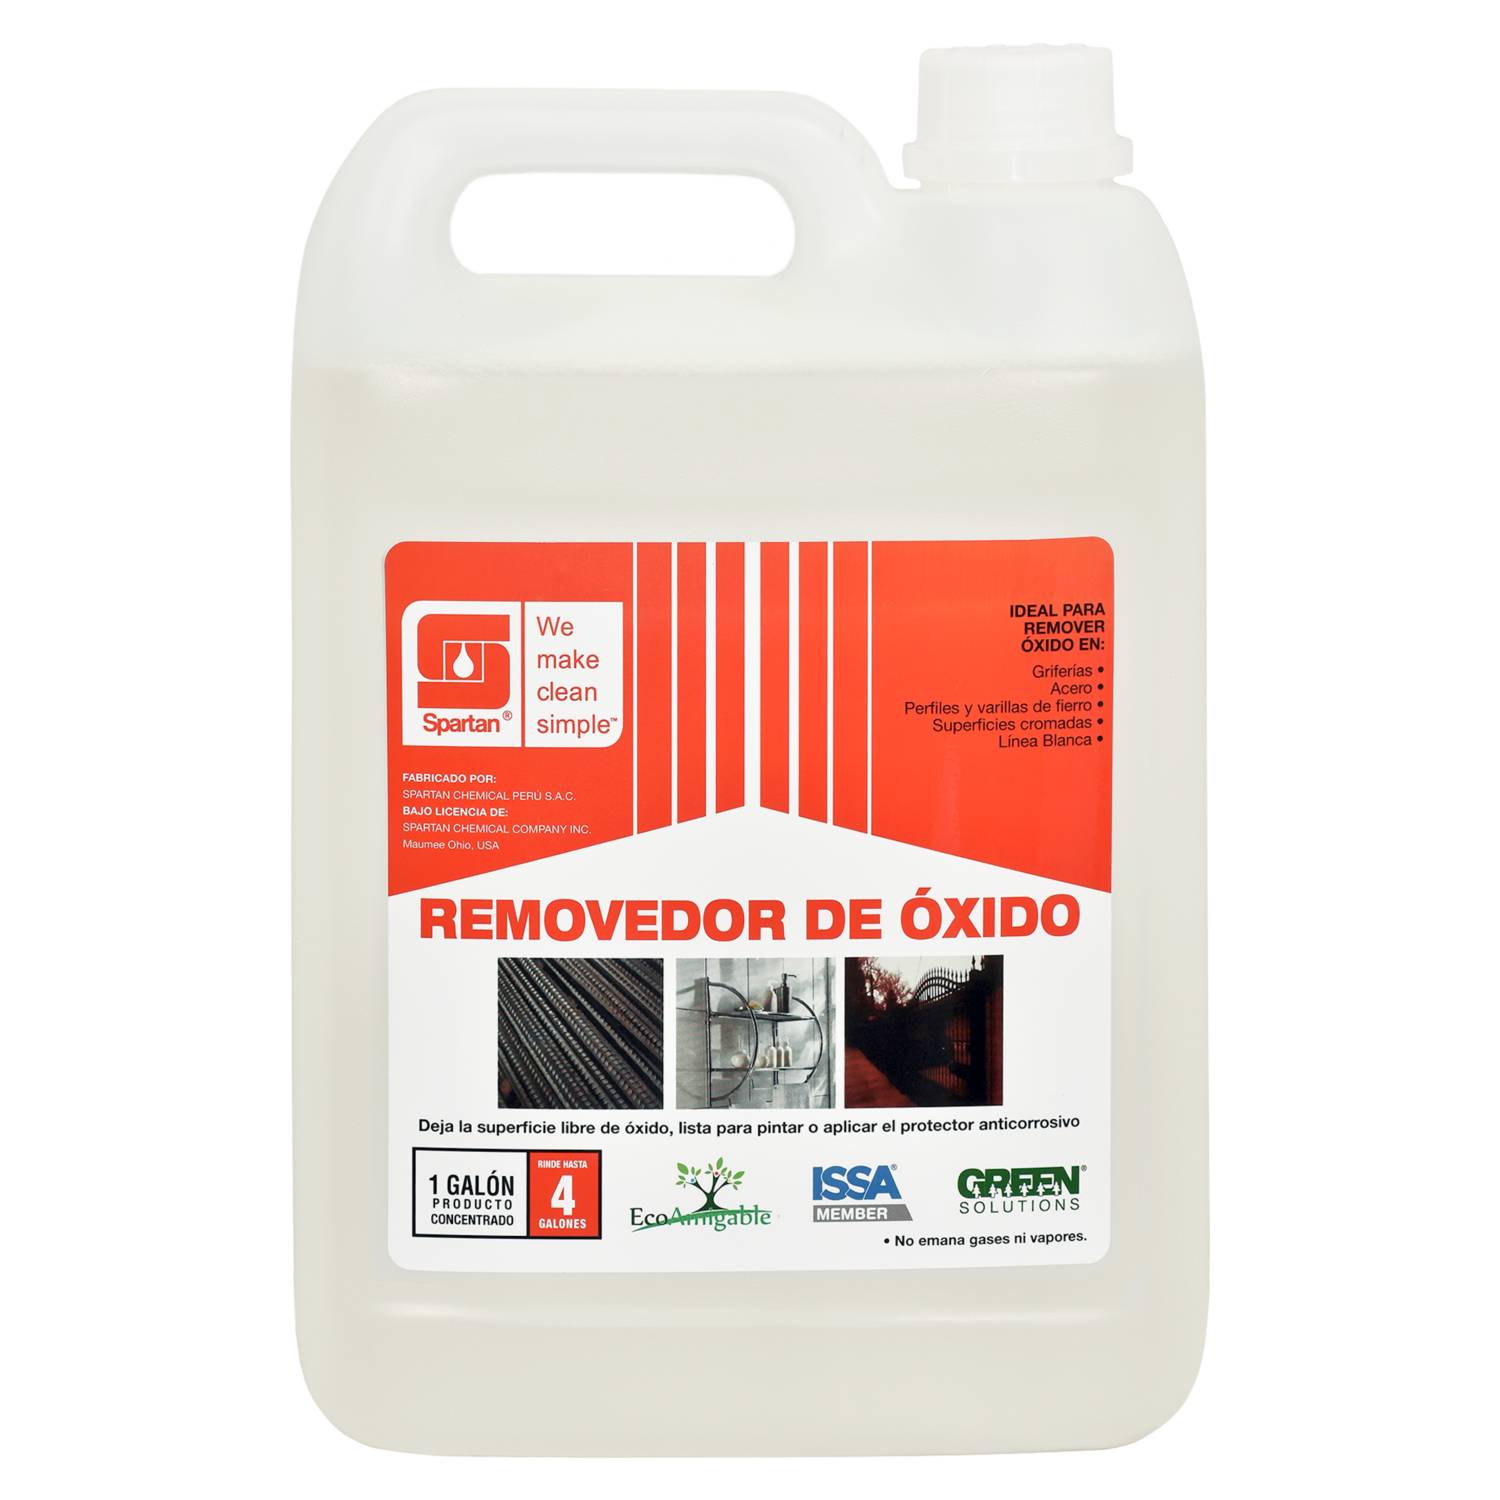 D-SOXIDEL Removedor de Oxido Poderoso y Seguro (Quita Oxido) 950 MLS  D-SOXIDEL 950 MLS